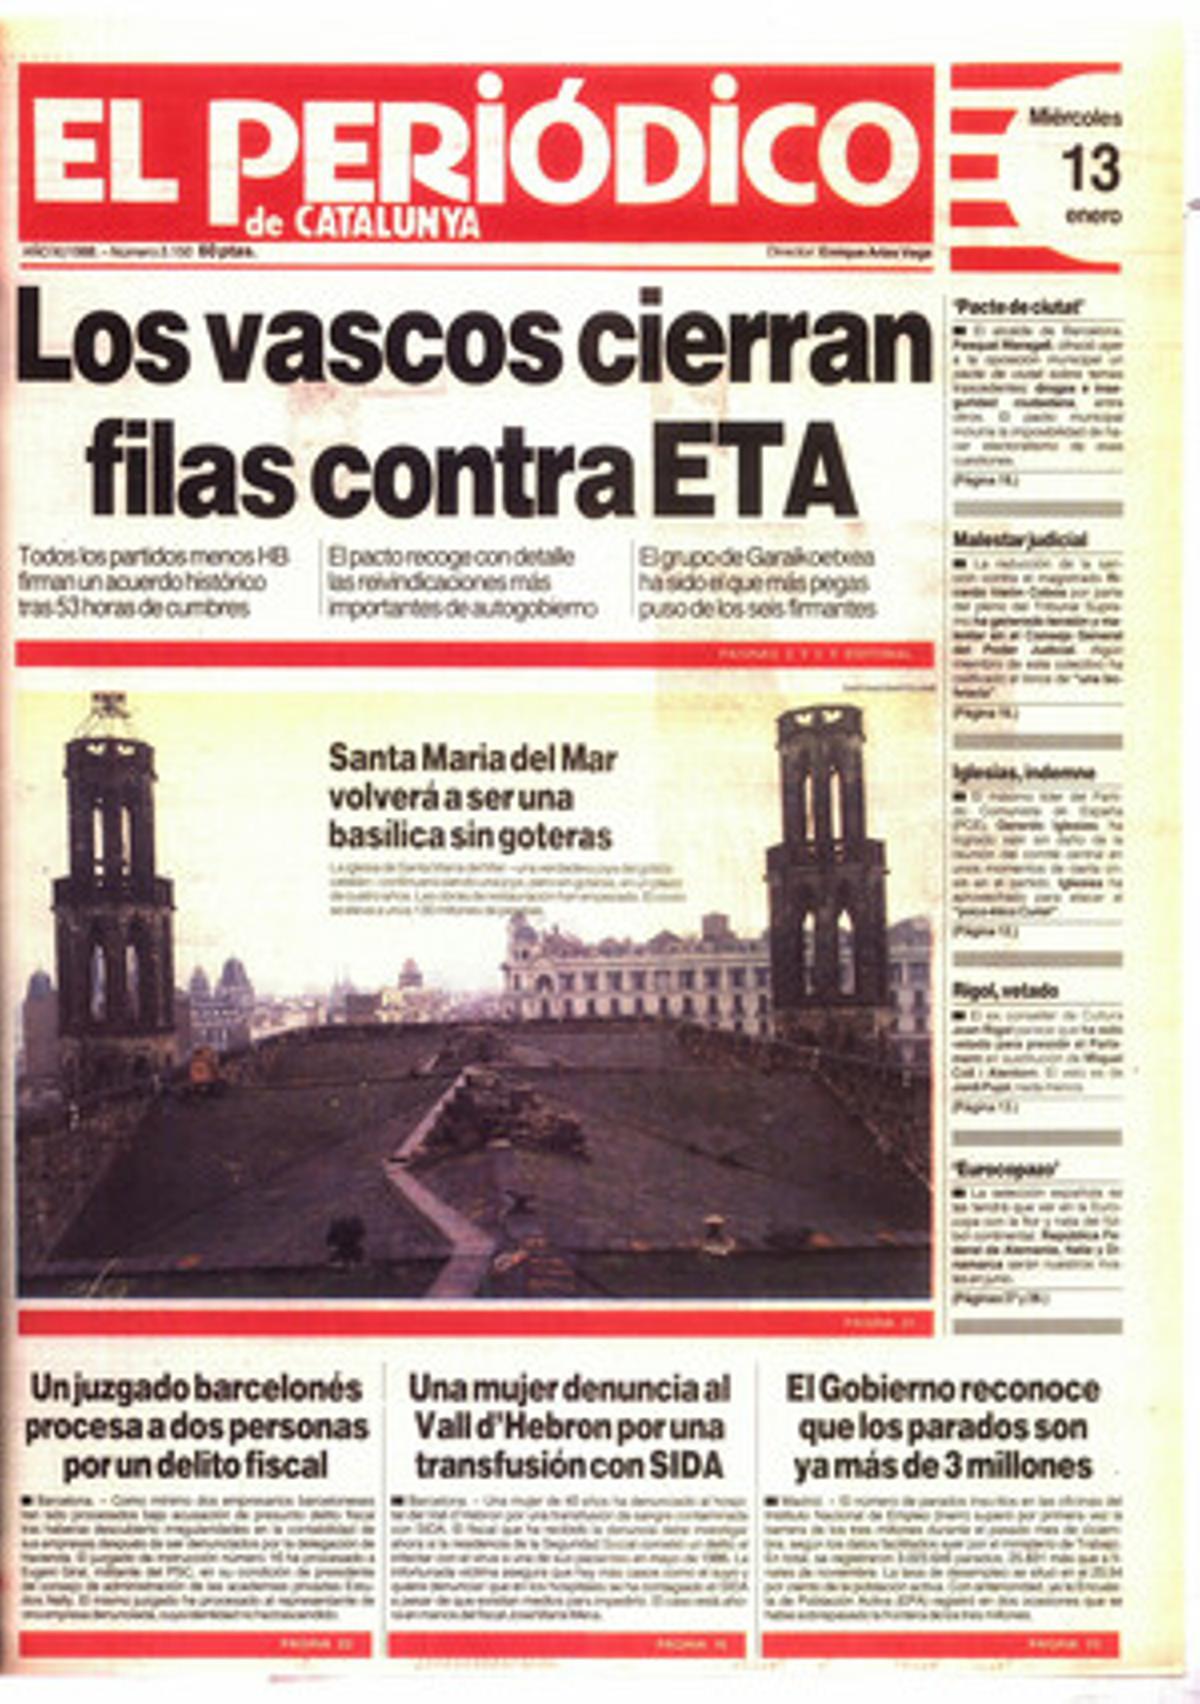 Los vascos cierran filas contra ETA con el pacto de Ajuria Enea. 13/1/1988